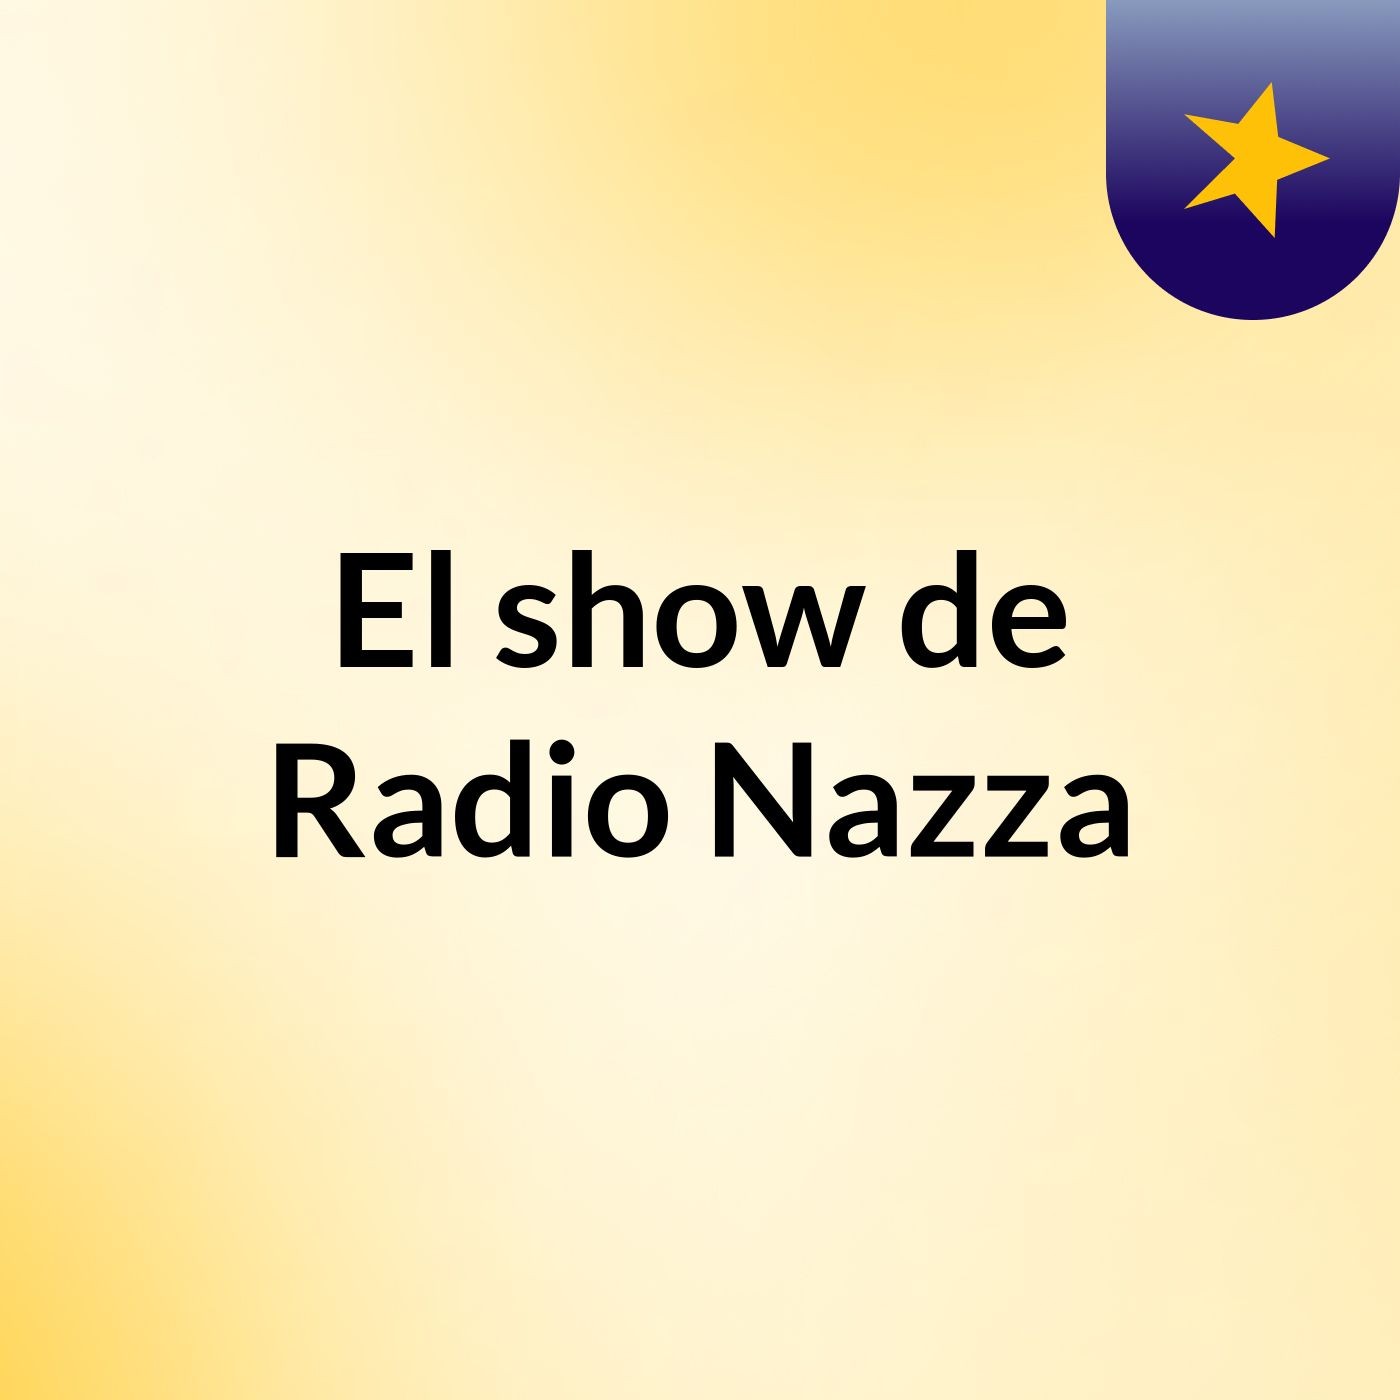 El show de Radio Nazza